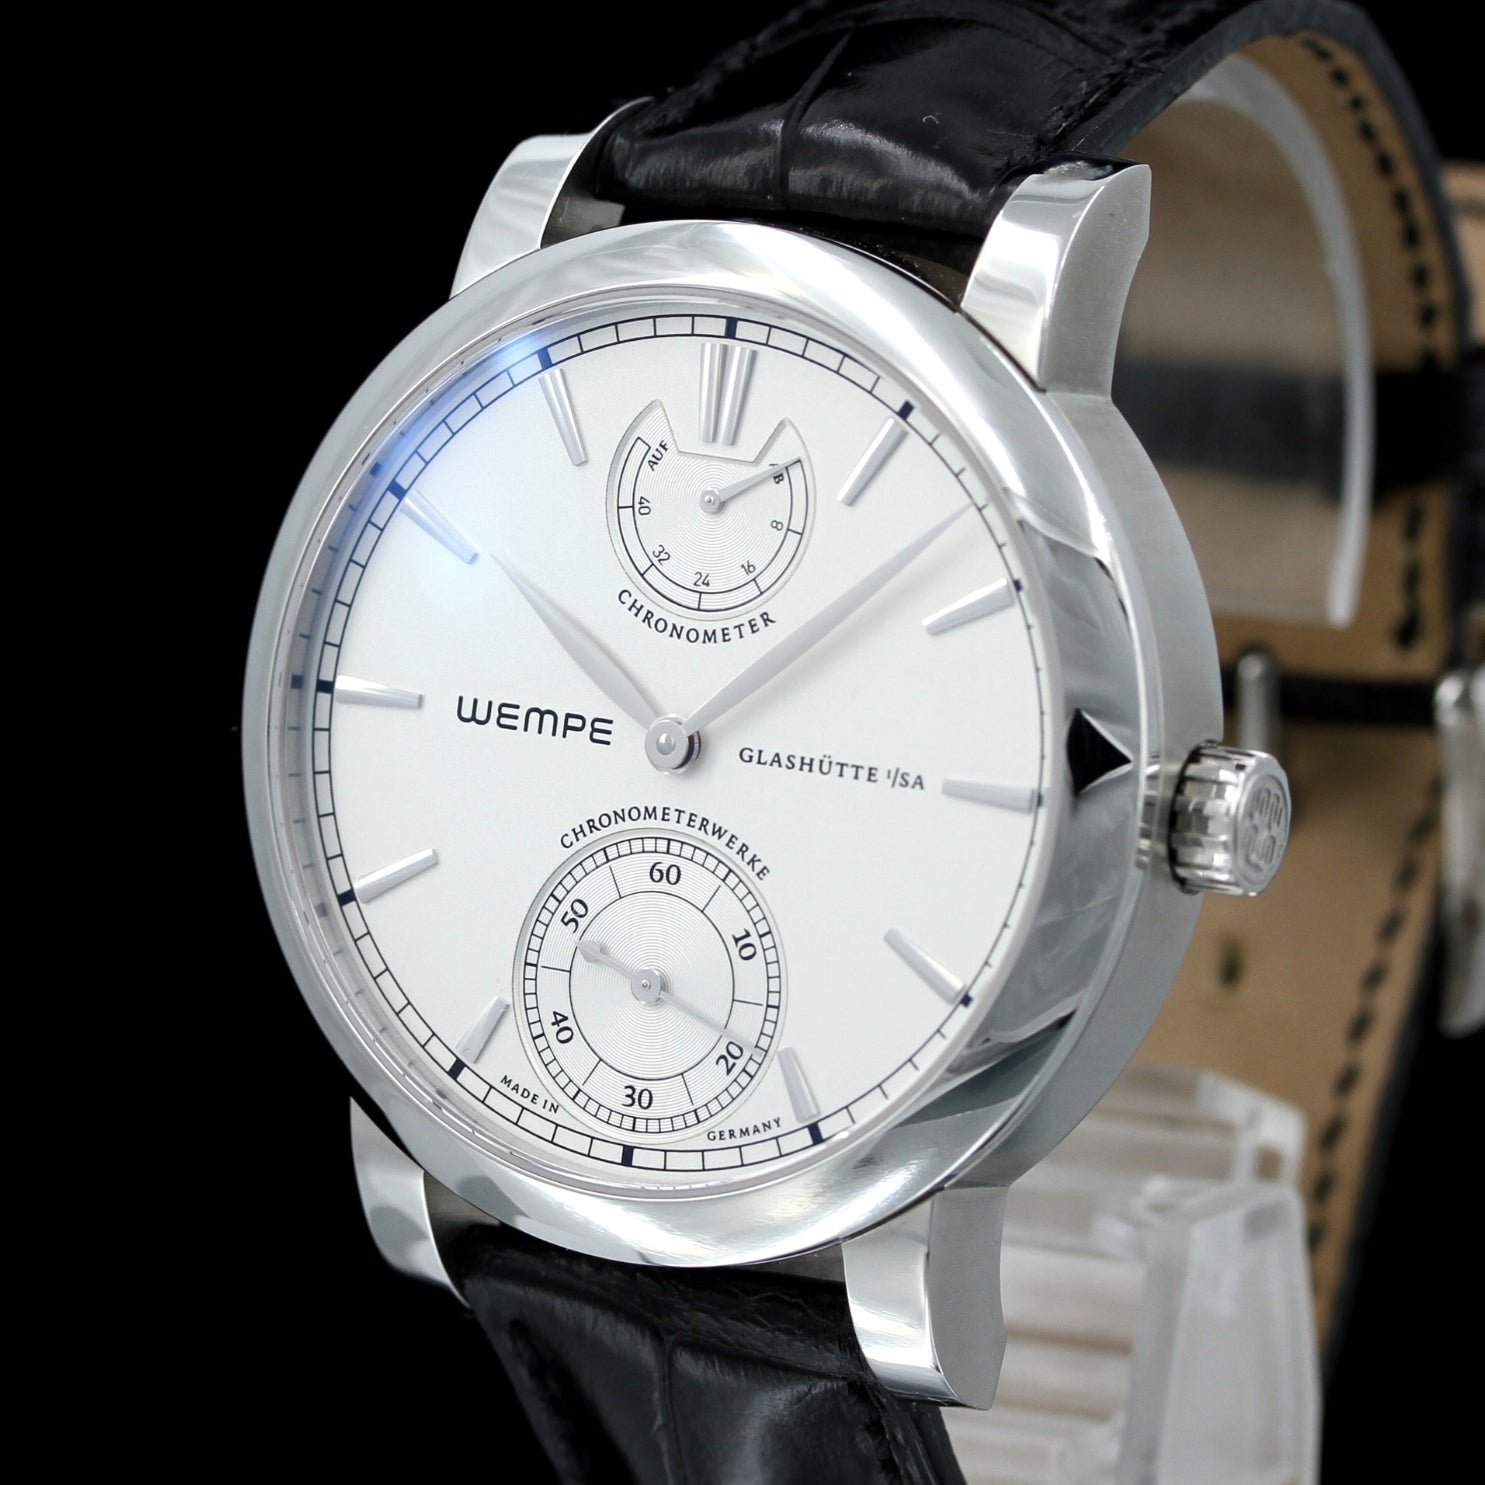 Wempe Glashütte Chronometerwerke 43mm, Gangreserve, Limitiert auf 60 Stück zu Ehren 80 Jahre Helmut Wempe, B+P - LUXUHRIA